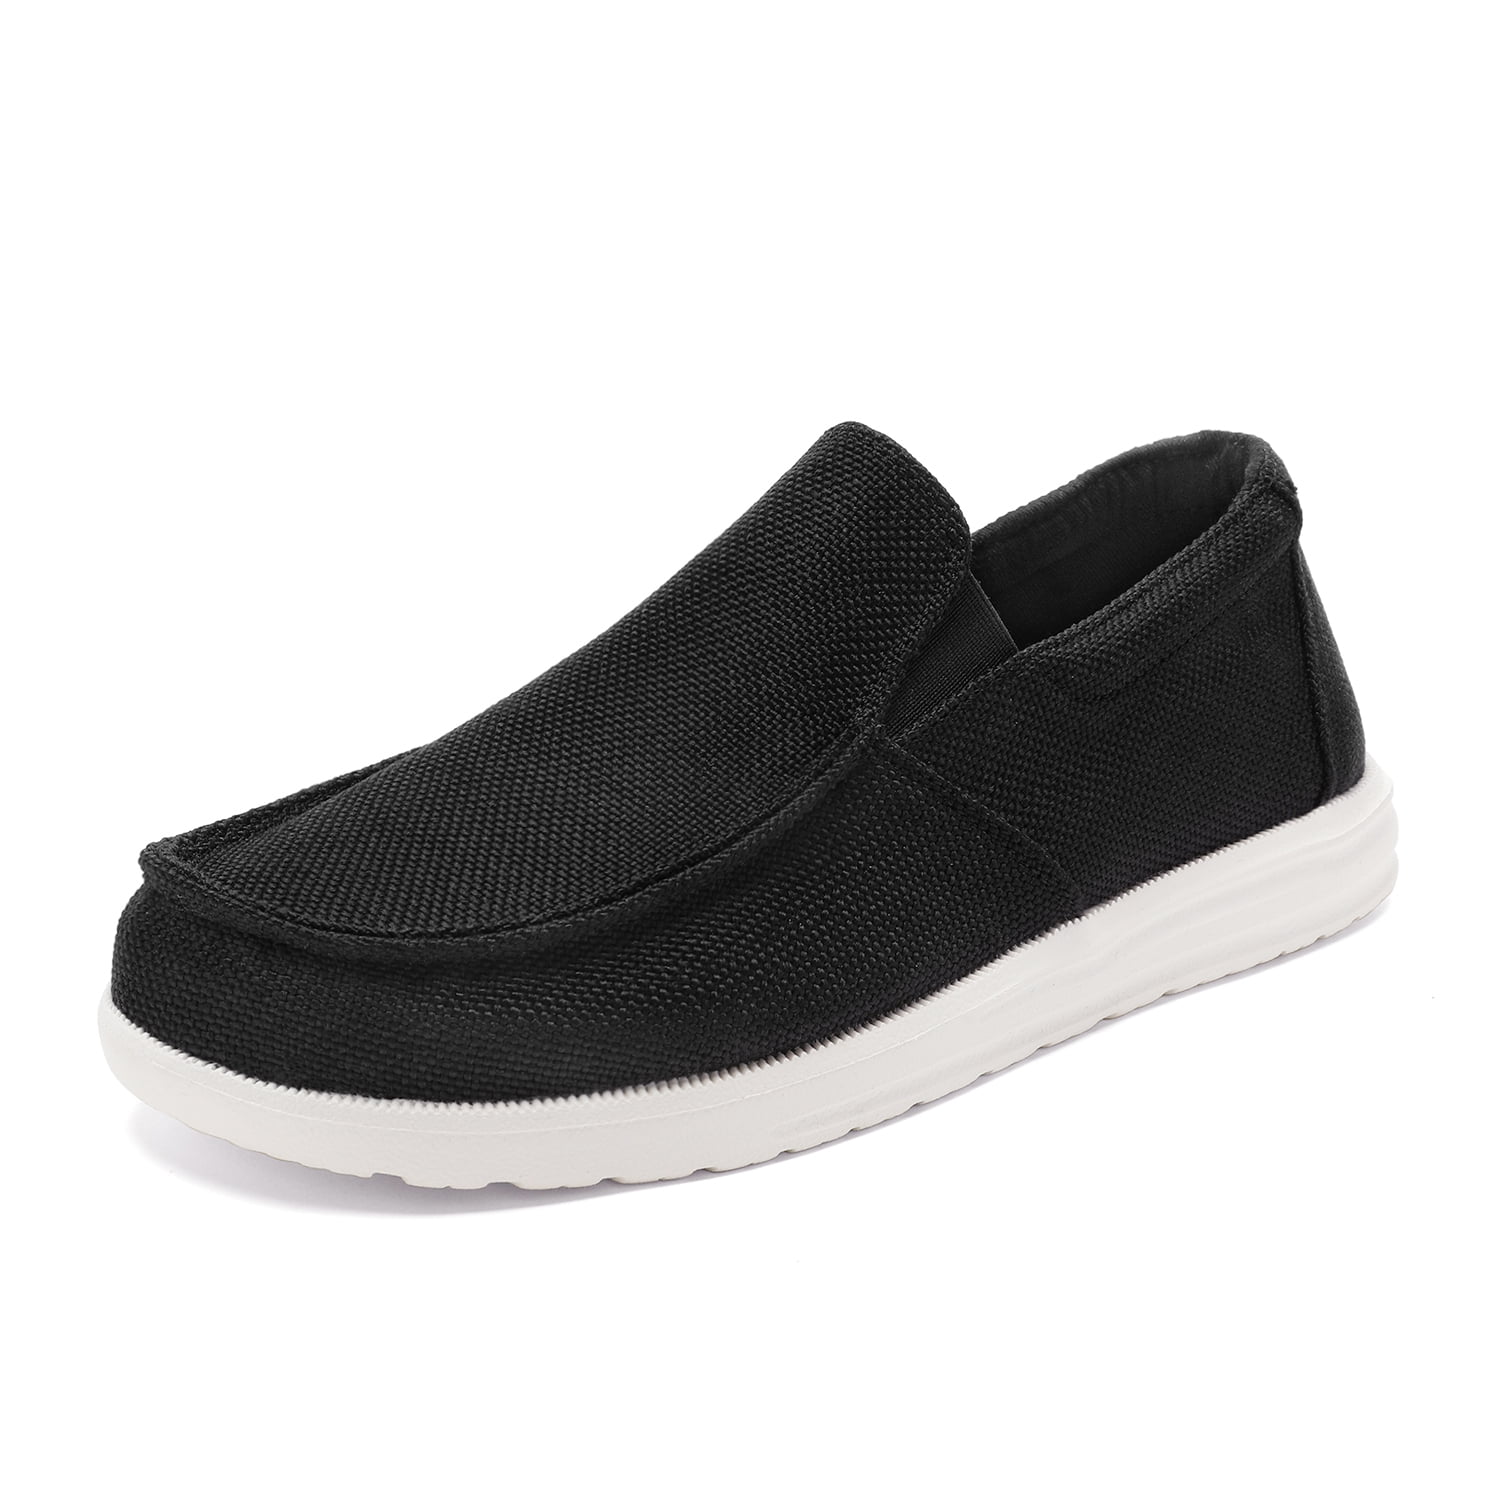 Bruno Marc Men's Slip On Loafer Walking Shoes SUNVENT-01 BLACK size 10 ...